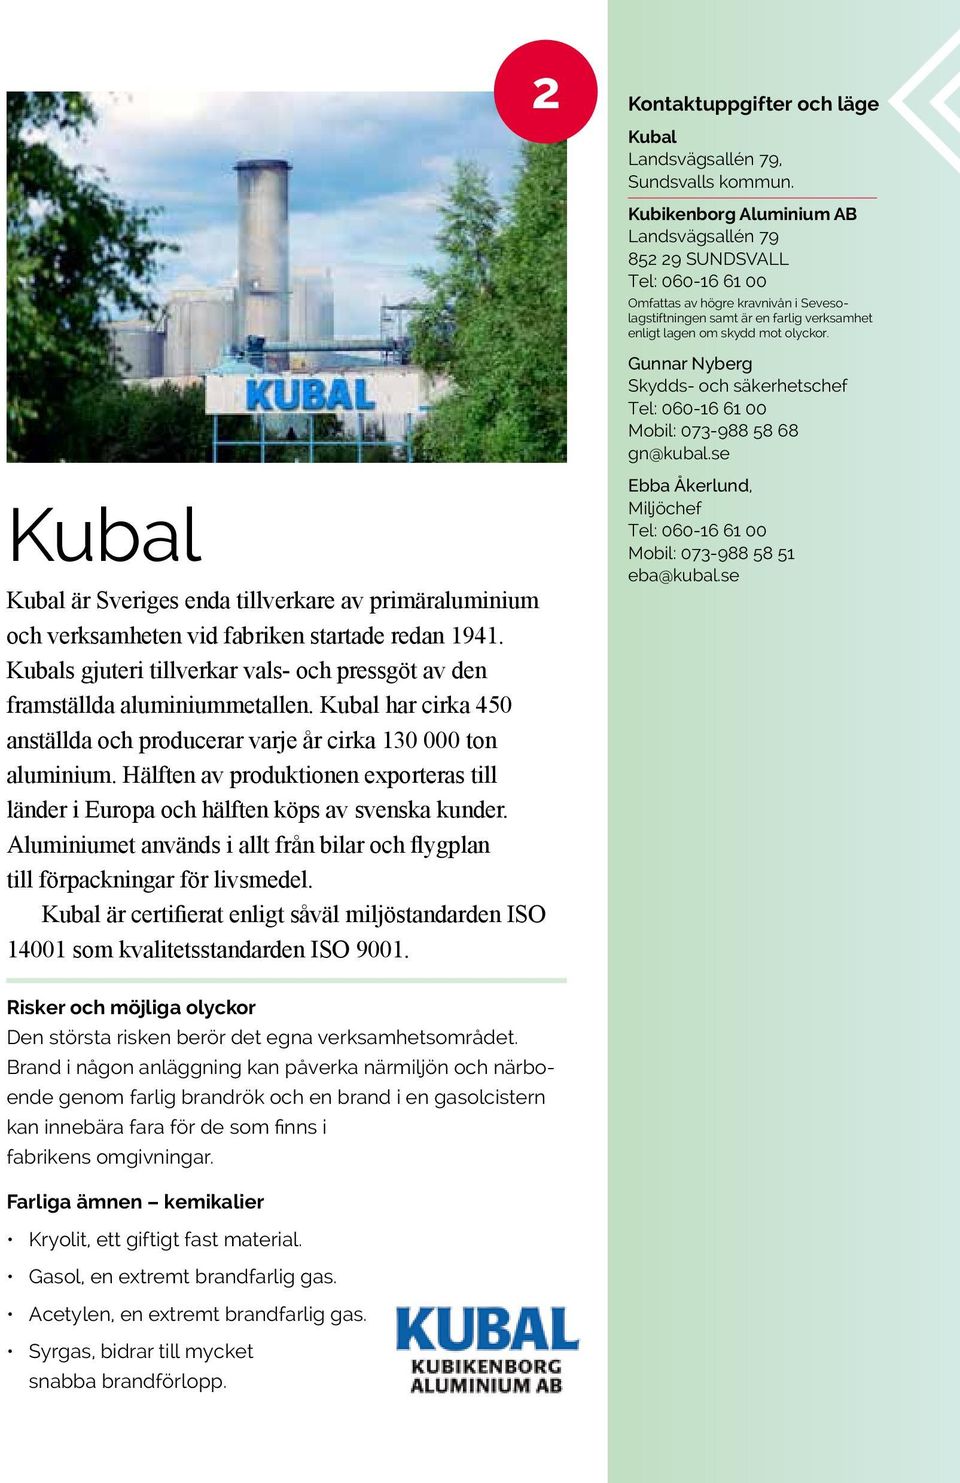 se Kubal Kubal är Sveriges enda tillverkare av primäraluminium och verksamheten vid fabriken startade redan 1941. Kubals gjuteri tillverkar vals- och pressgöt av den framställda aluminiummetallen.